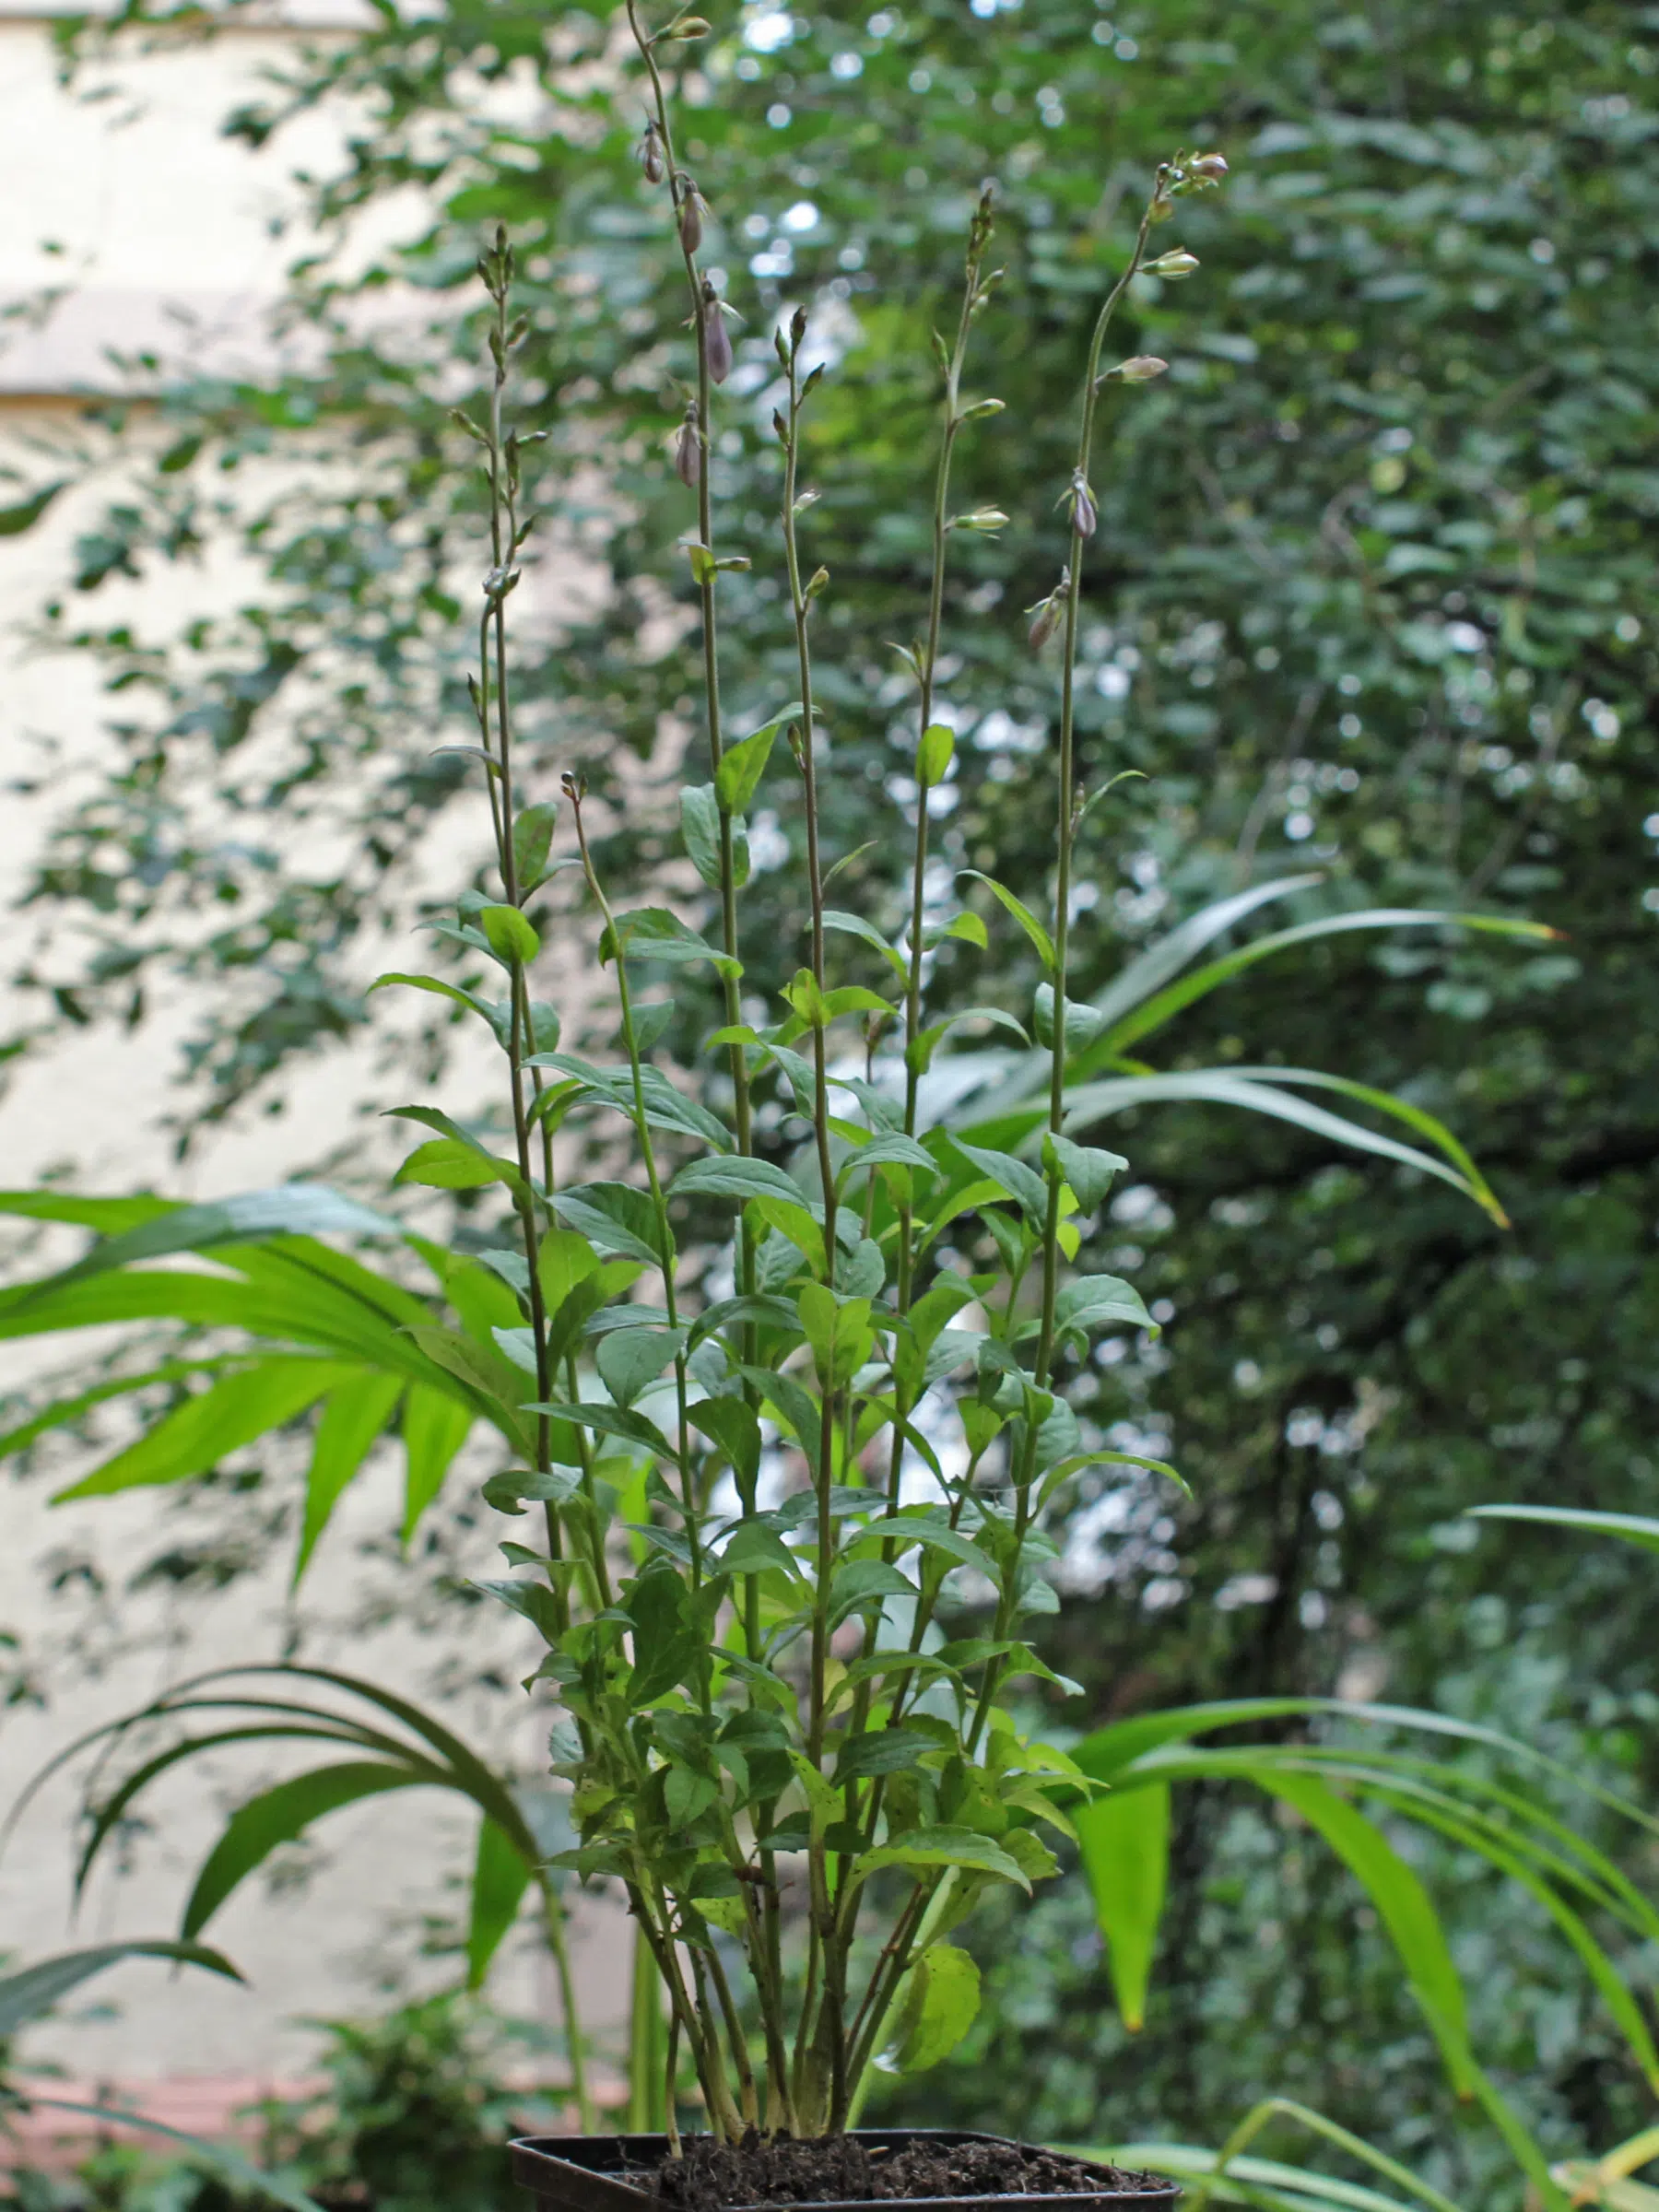 Schellenblume Adenophora liliifolia